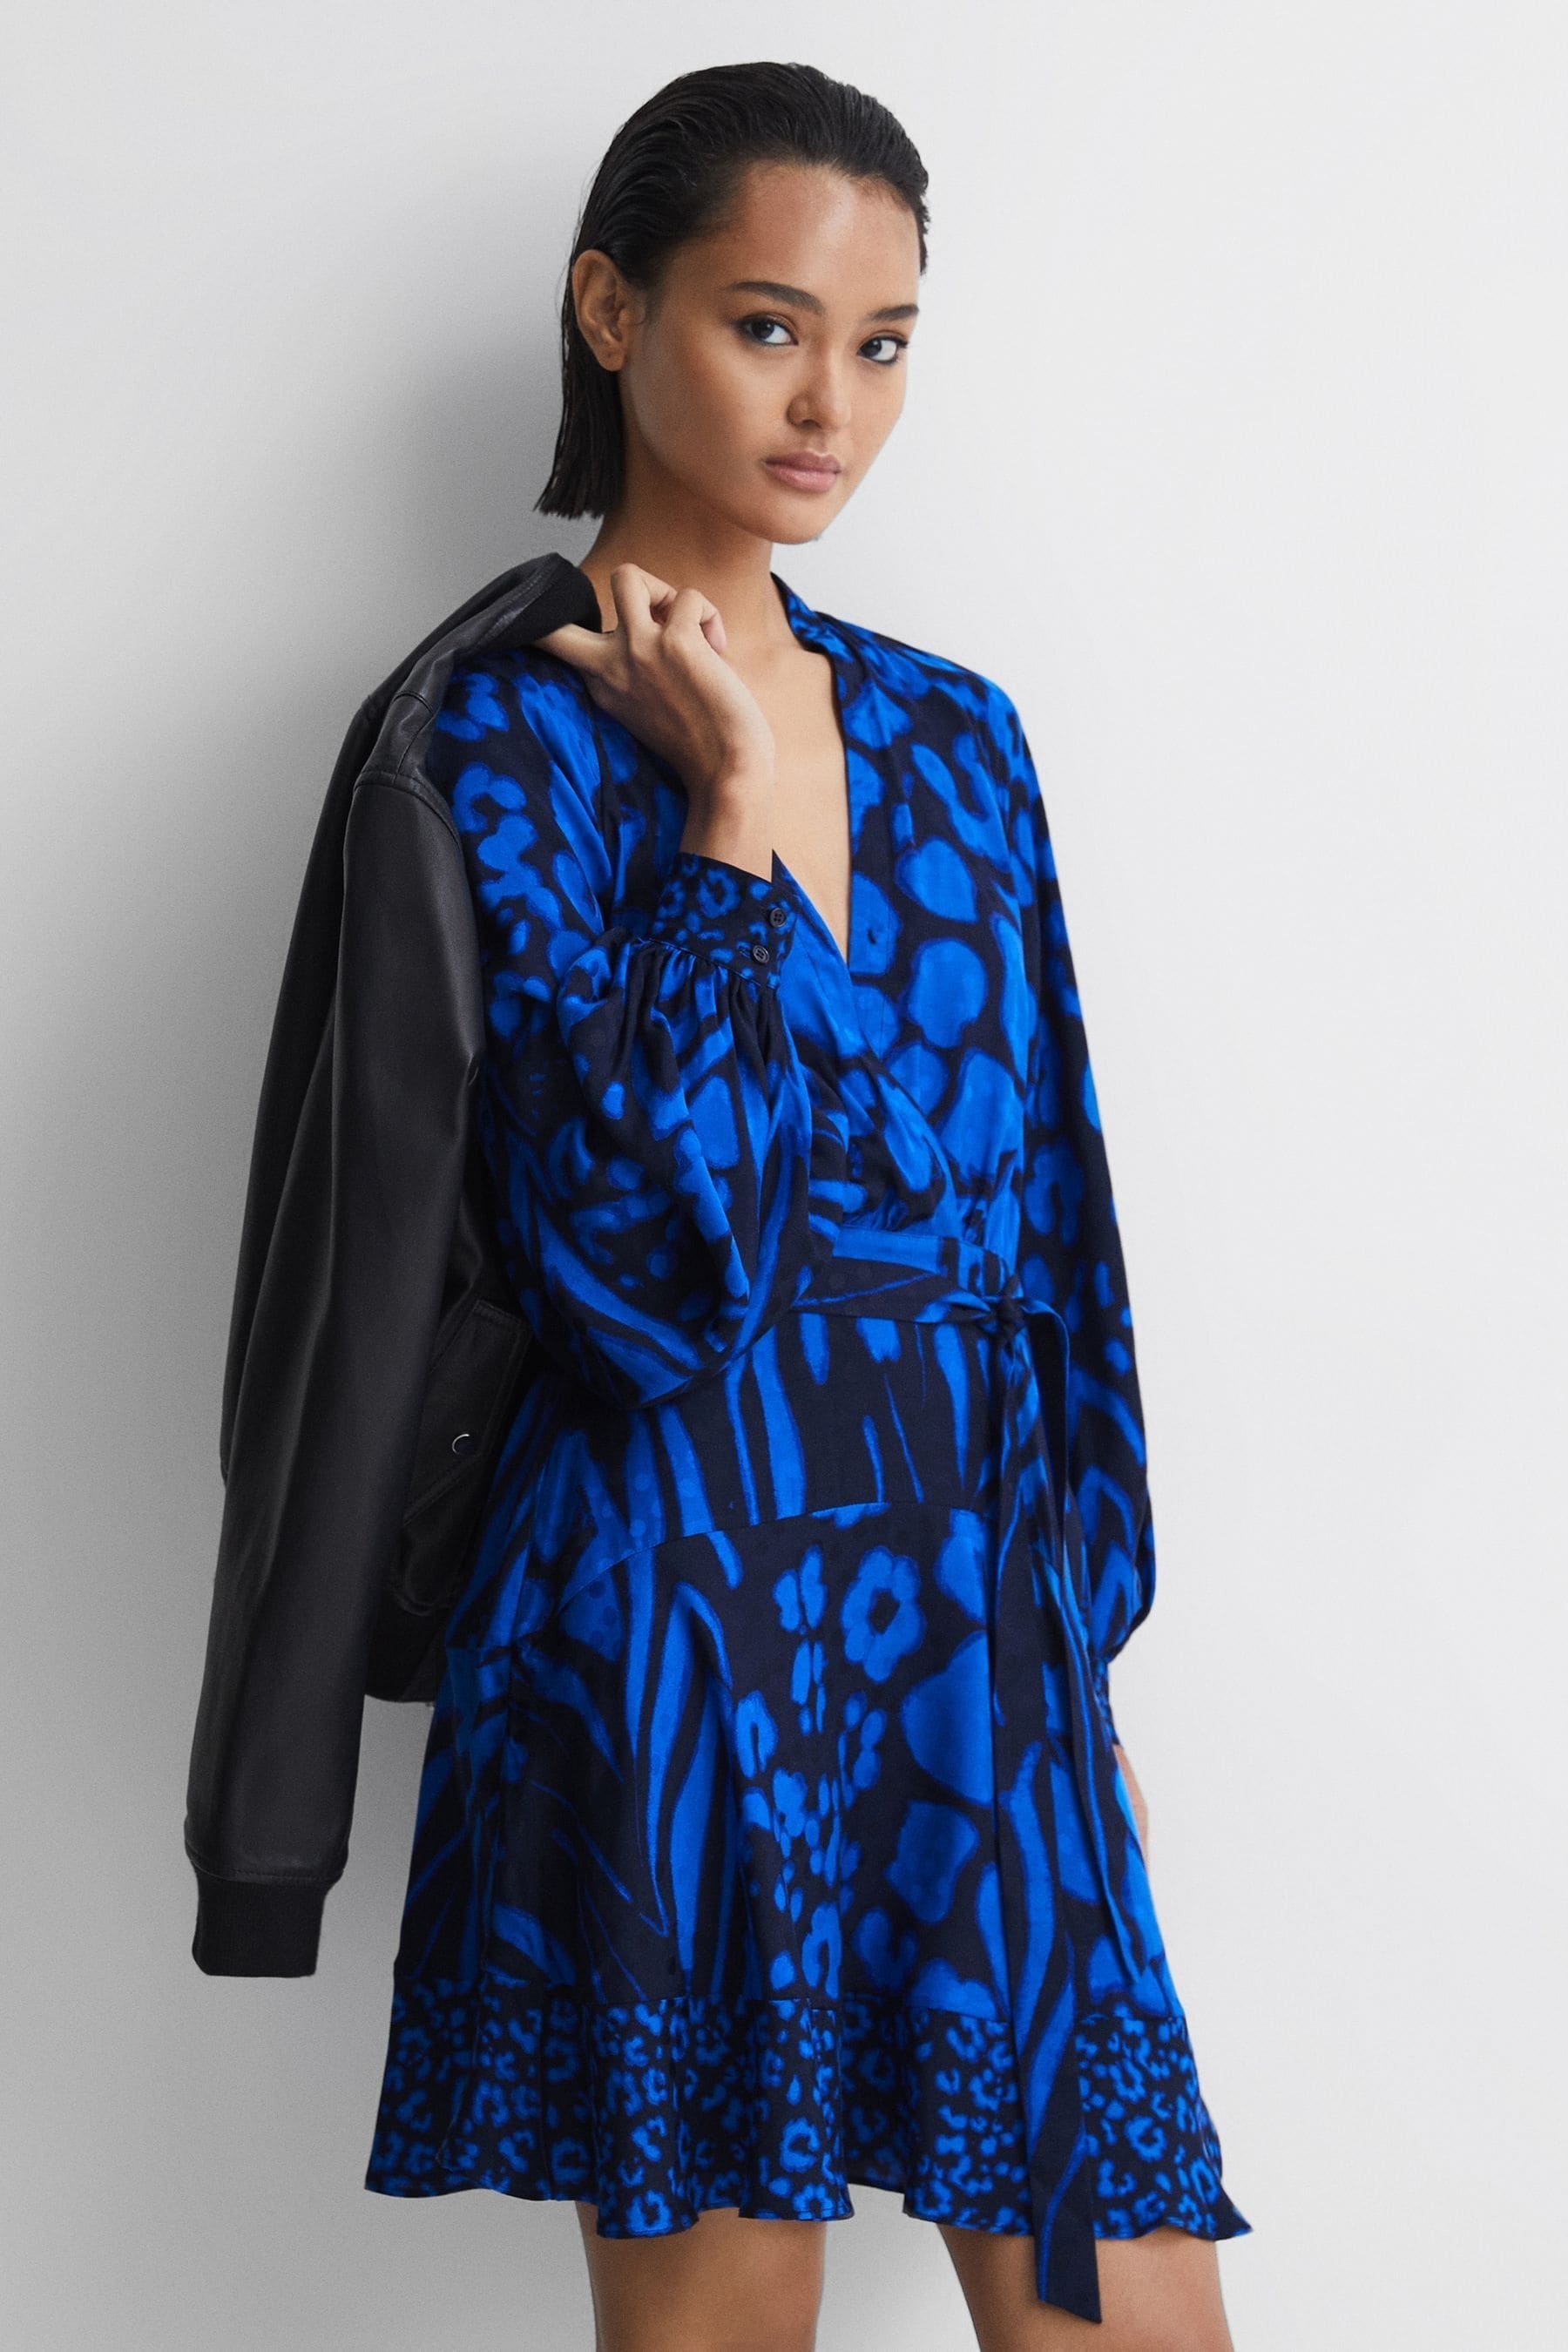 Reiss Kerri - Blue/navy Printed Blouson Sleeve Dress, Us 2